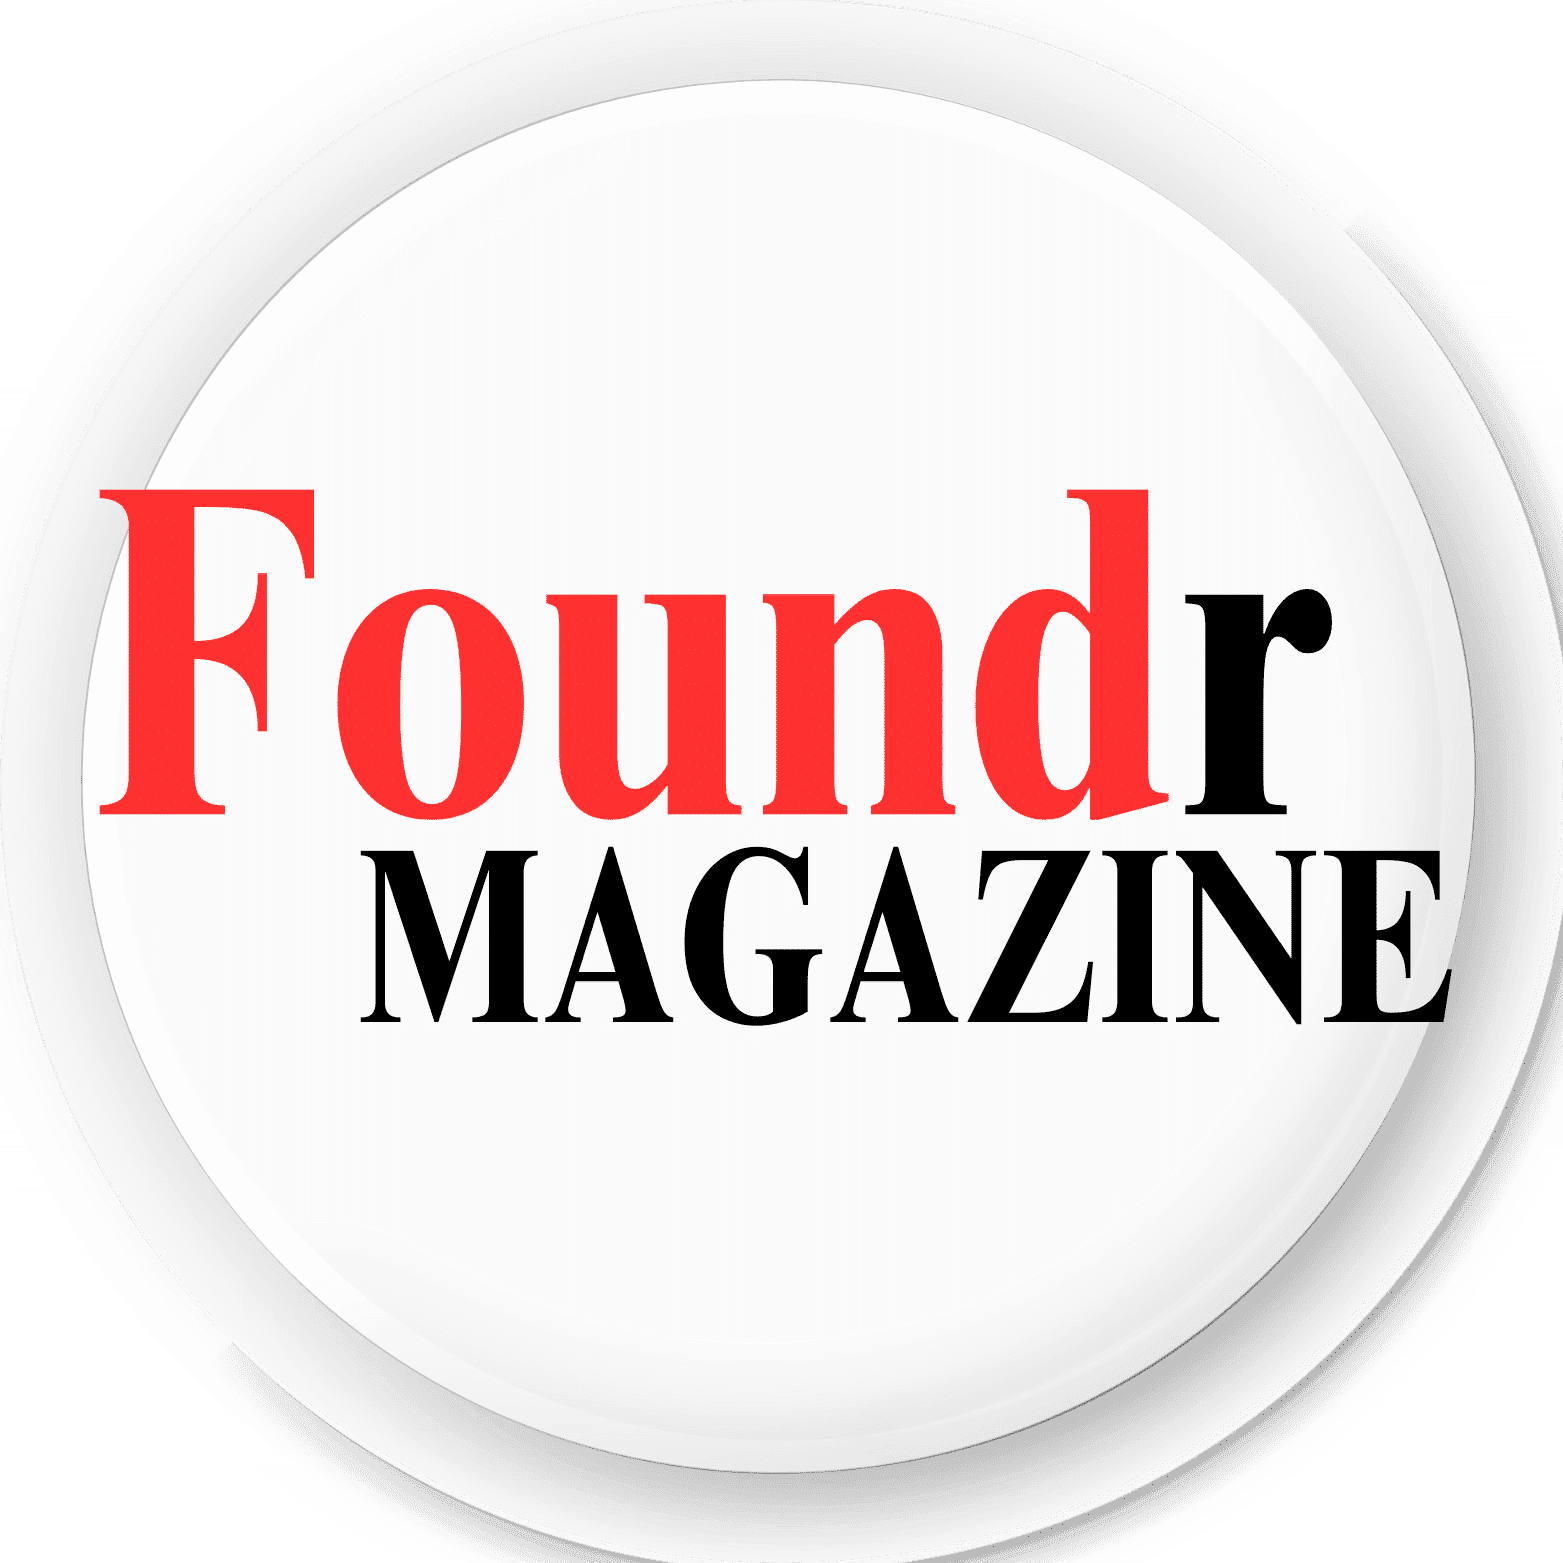 Foundr Magazine India